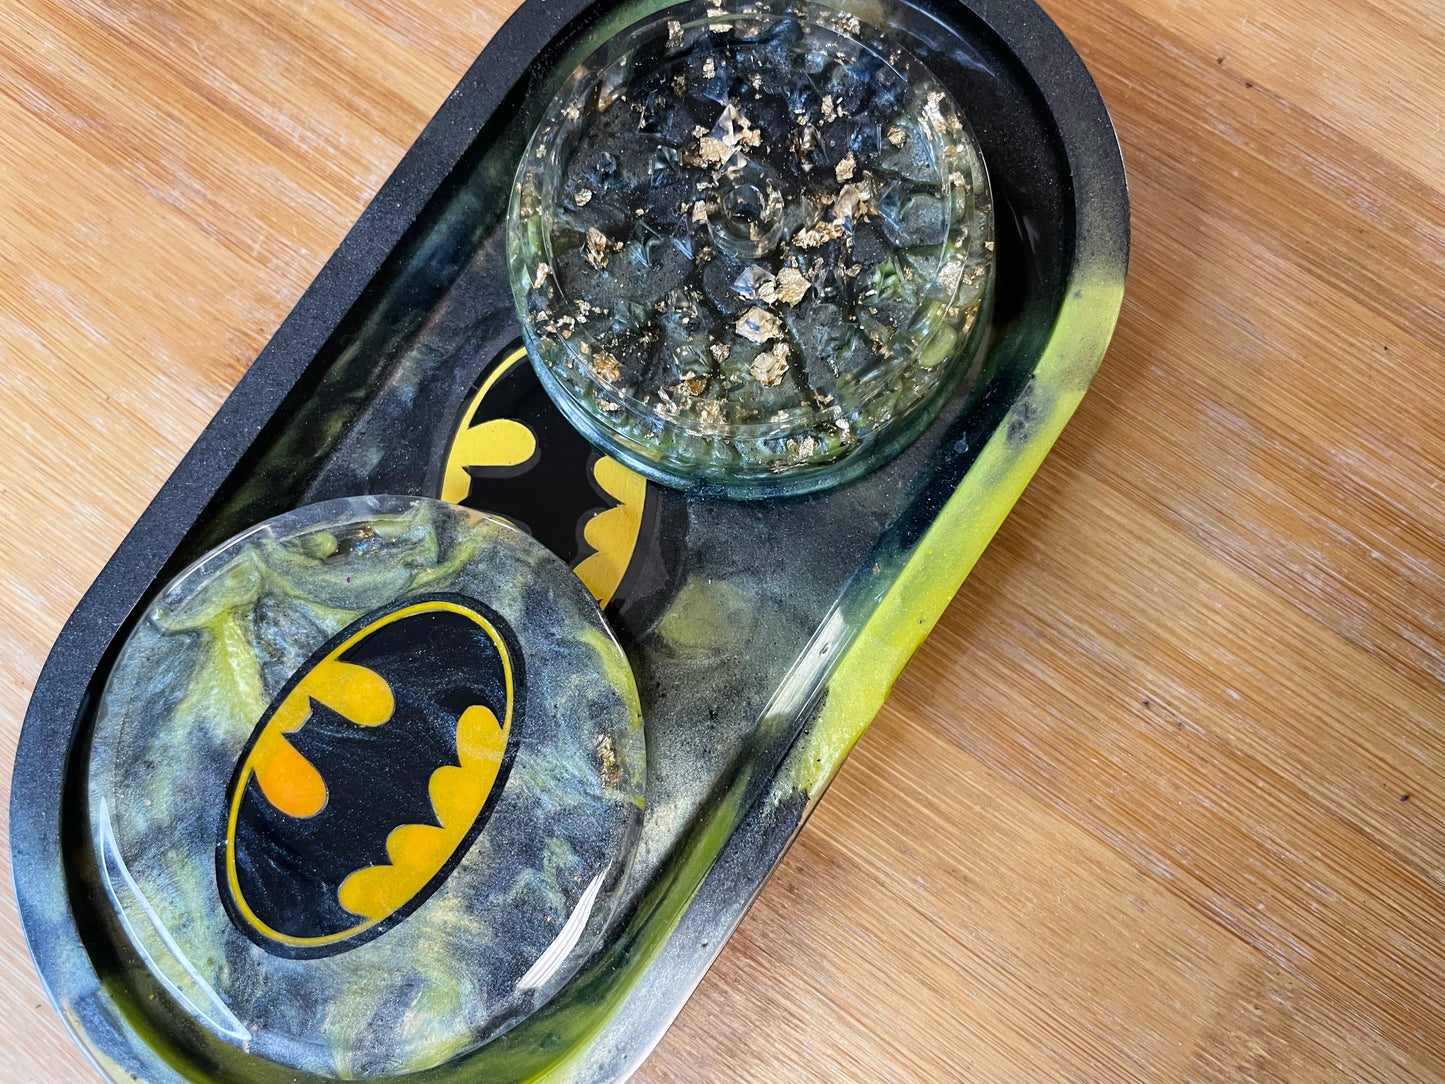 Bat Herb Grinder & Tray Set, Yellow & Black